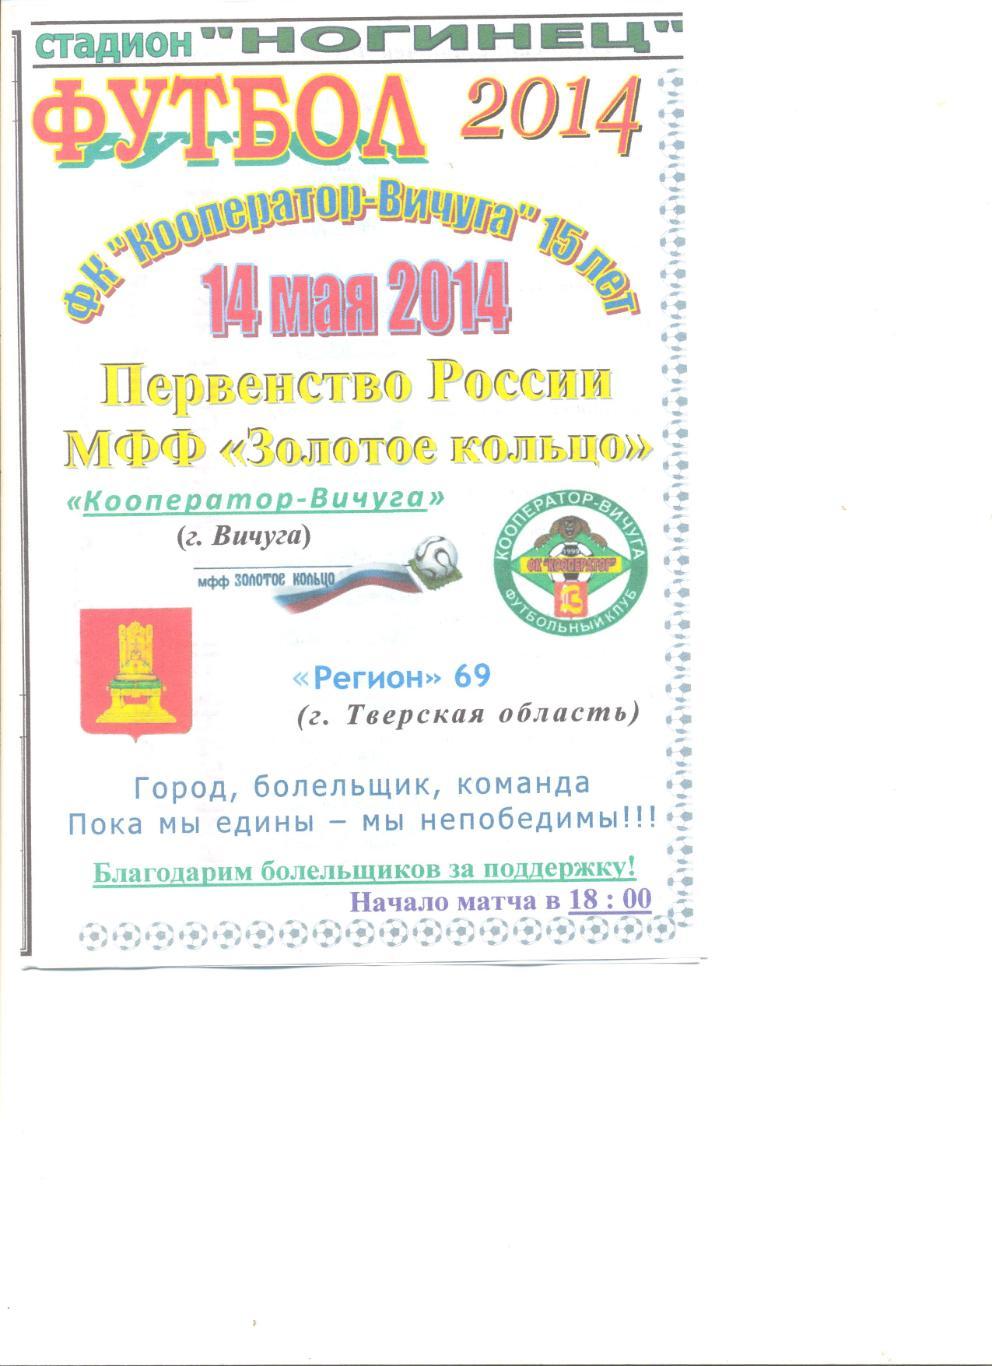 Кооператор Вичуга - Регион 69 Тверская область 14.05.2014 г.